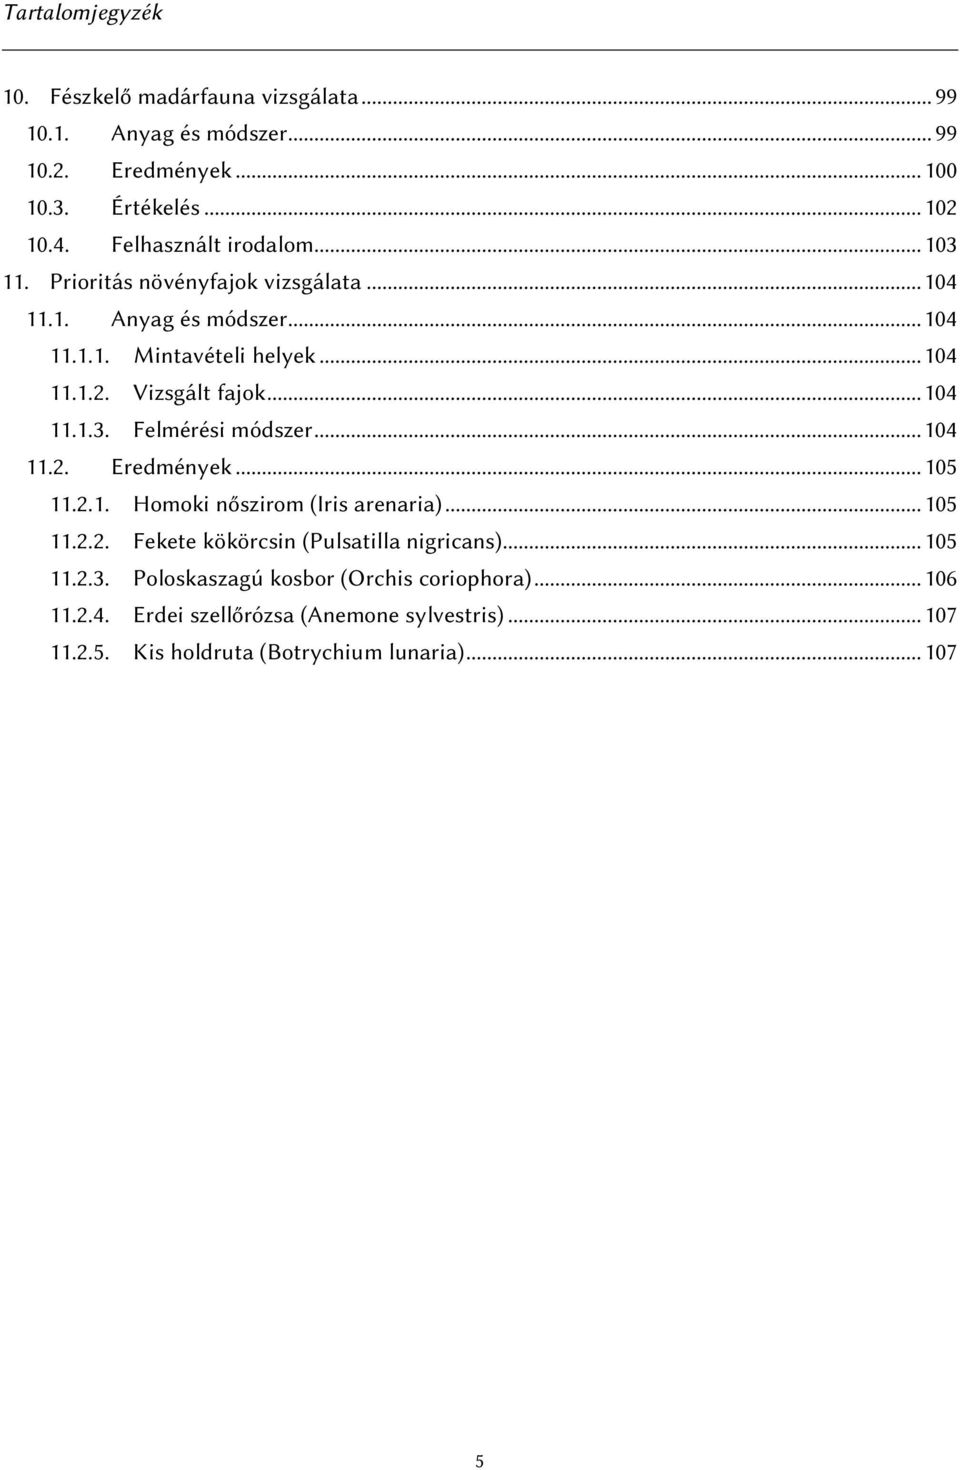 Vizsgált fajok... 104 11.1.3. Felmérési módszer... 104 11.2. Eredmények... 105 11.2.1. Homoki nőszirom (Iris arenaria)... 105 11.2.2. Fekete kökörcsin (Pulsatilla nigricans).